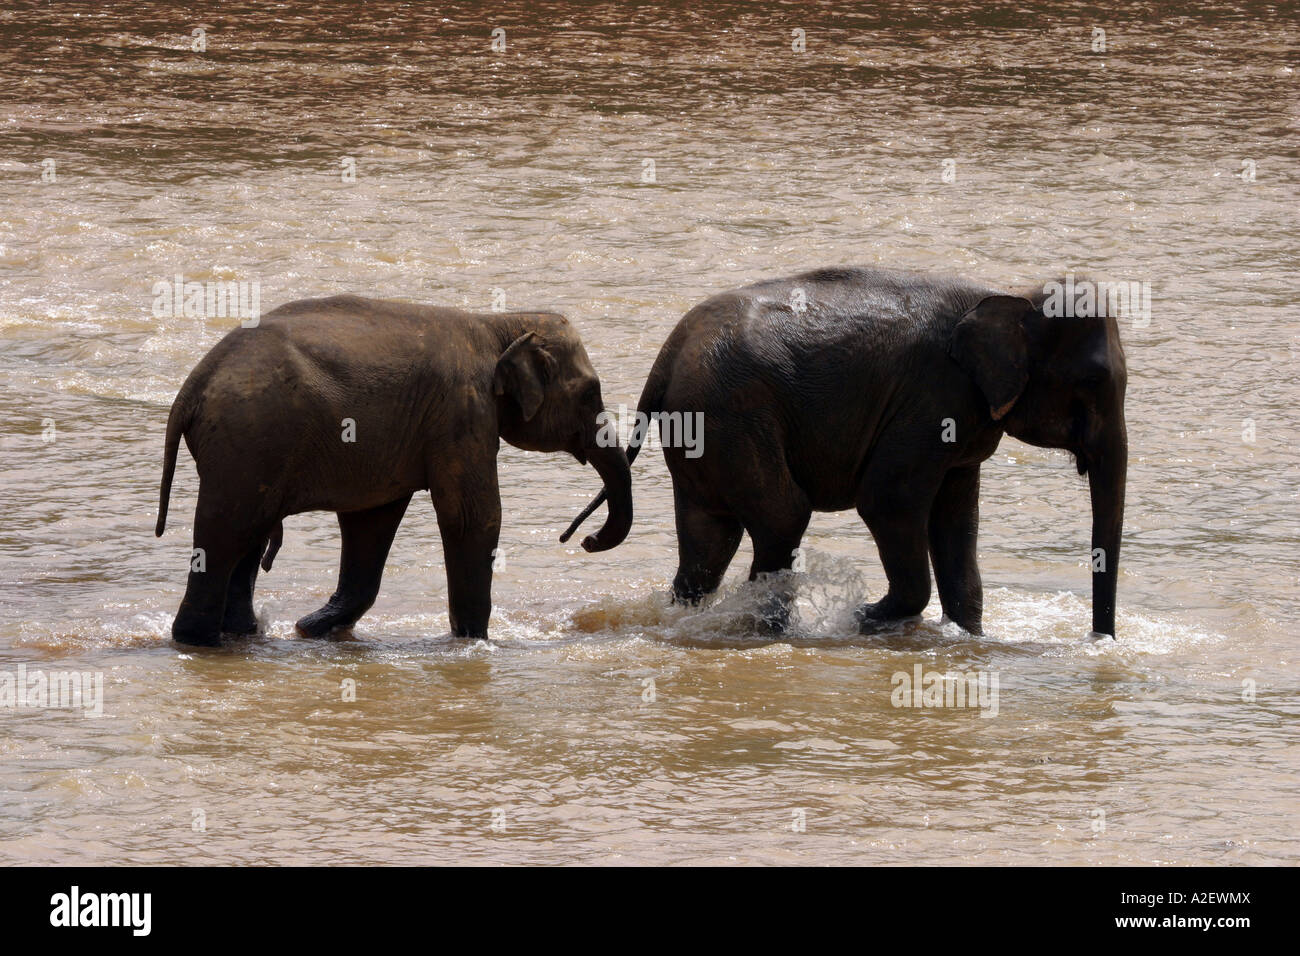 Éléphants du Sri Lanka - éléphants d'asie mâles et femelles adultes dans le fleuve Mahaweli Ganga, Pinnawala, Sri Lanka, Asie Banque D'Images